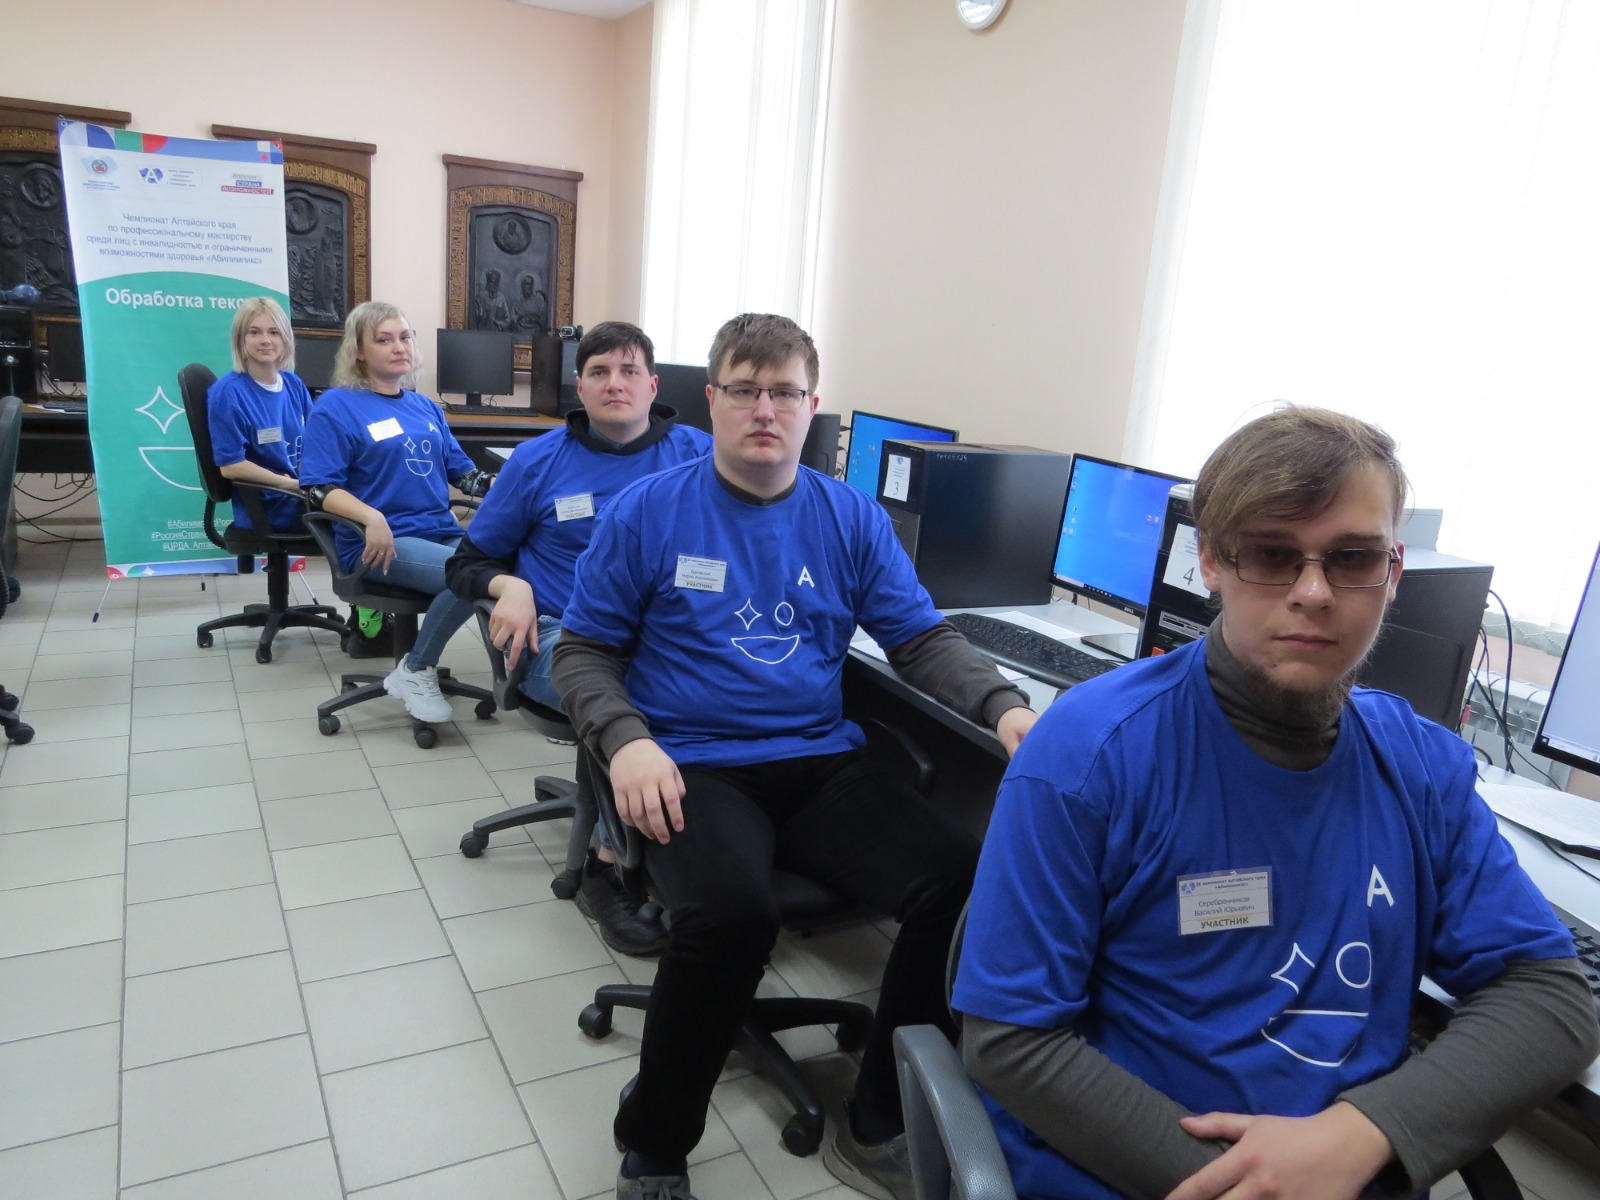 Тифлокомментарий к фотографии 2: участники чемпионата по компетенции "Обработка текста" перед началом конкурса за своими рабочими компьютерами.